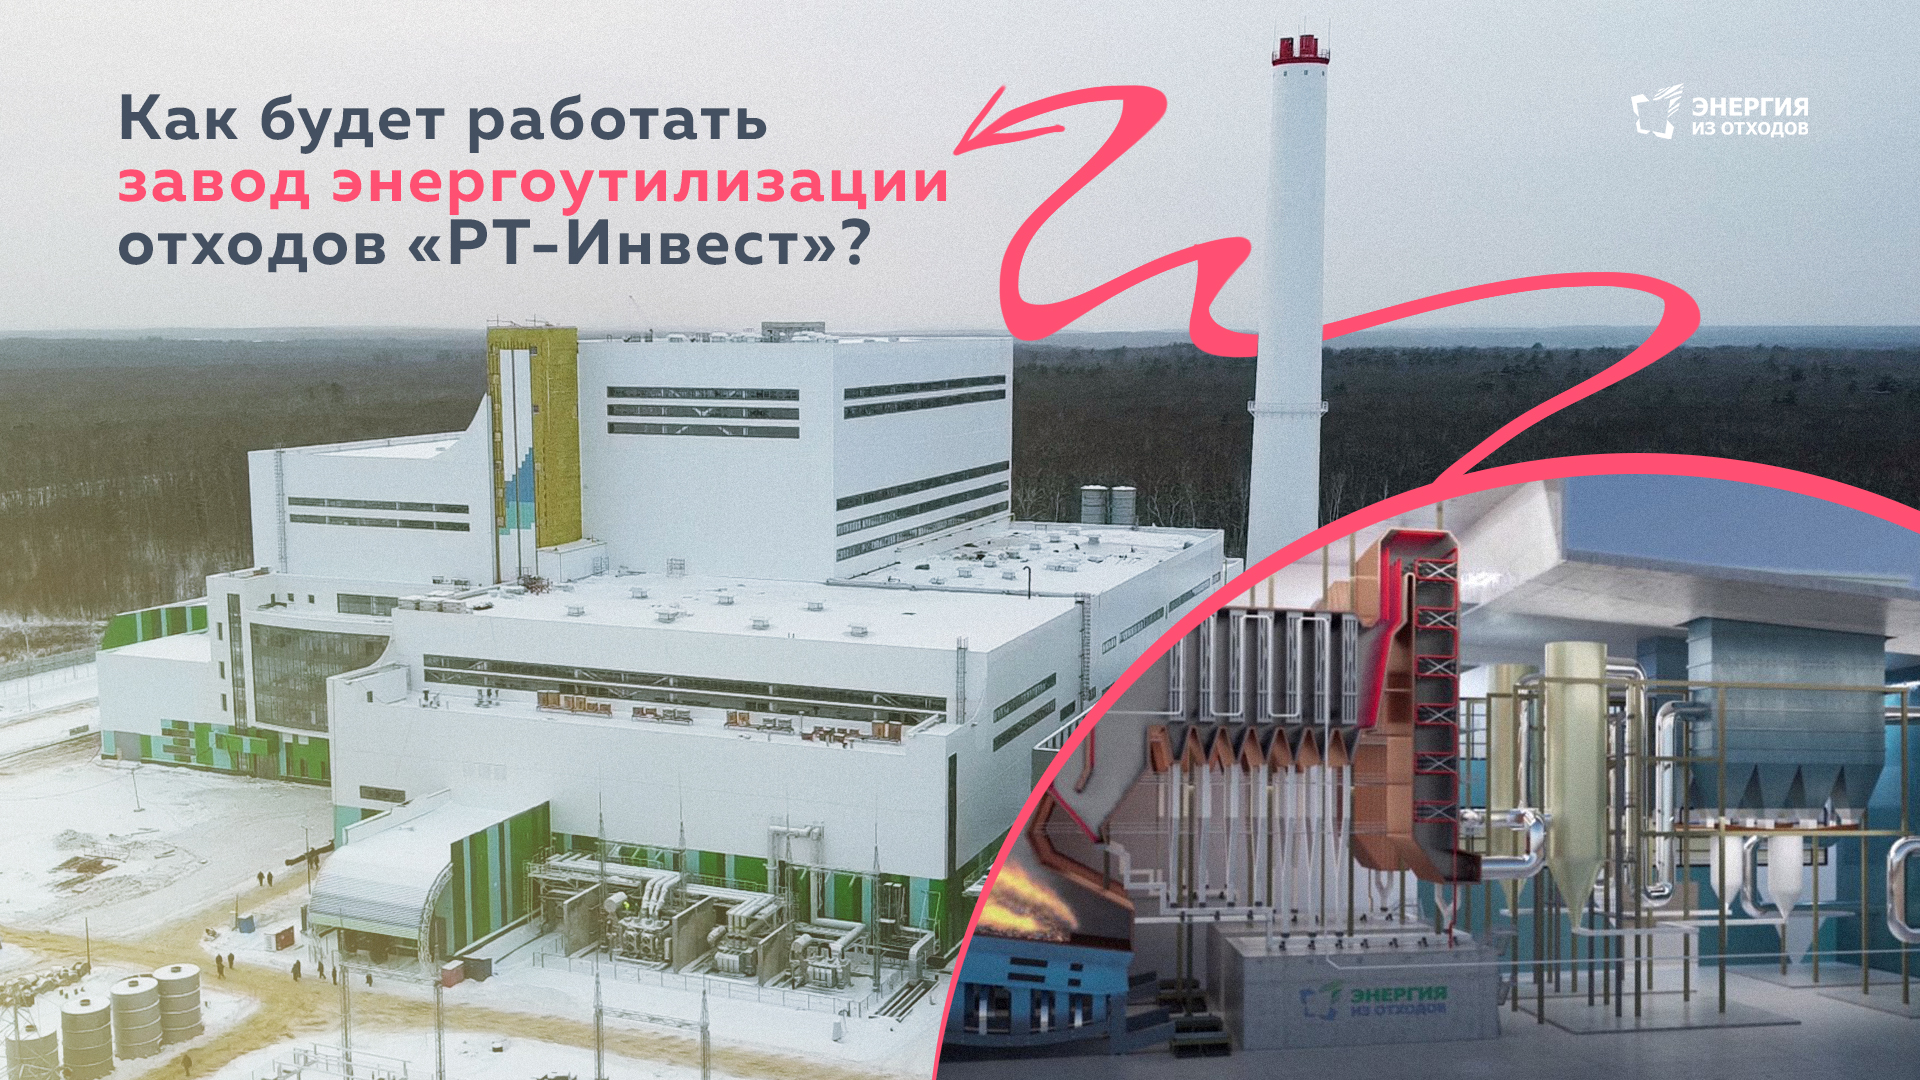 Как будет работать завод энергоутилизации отходов «РТ-Инвест»